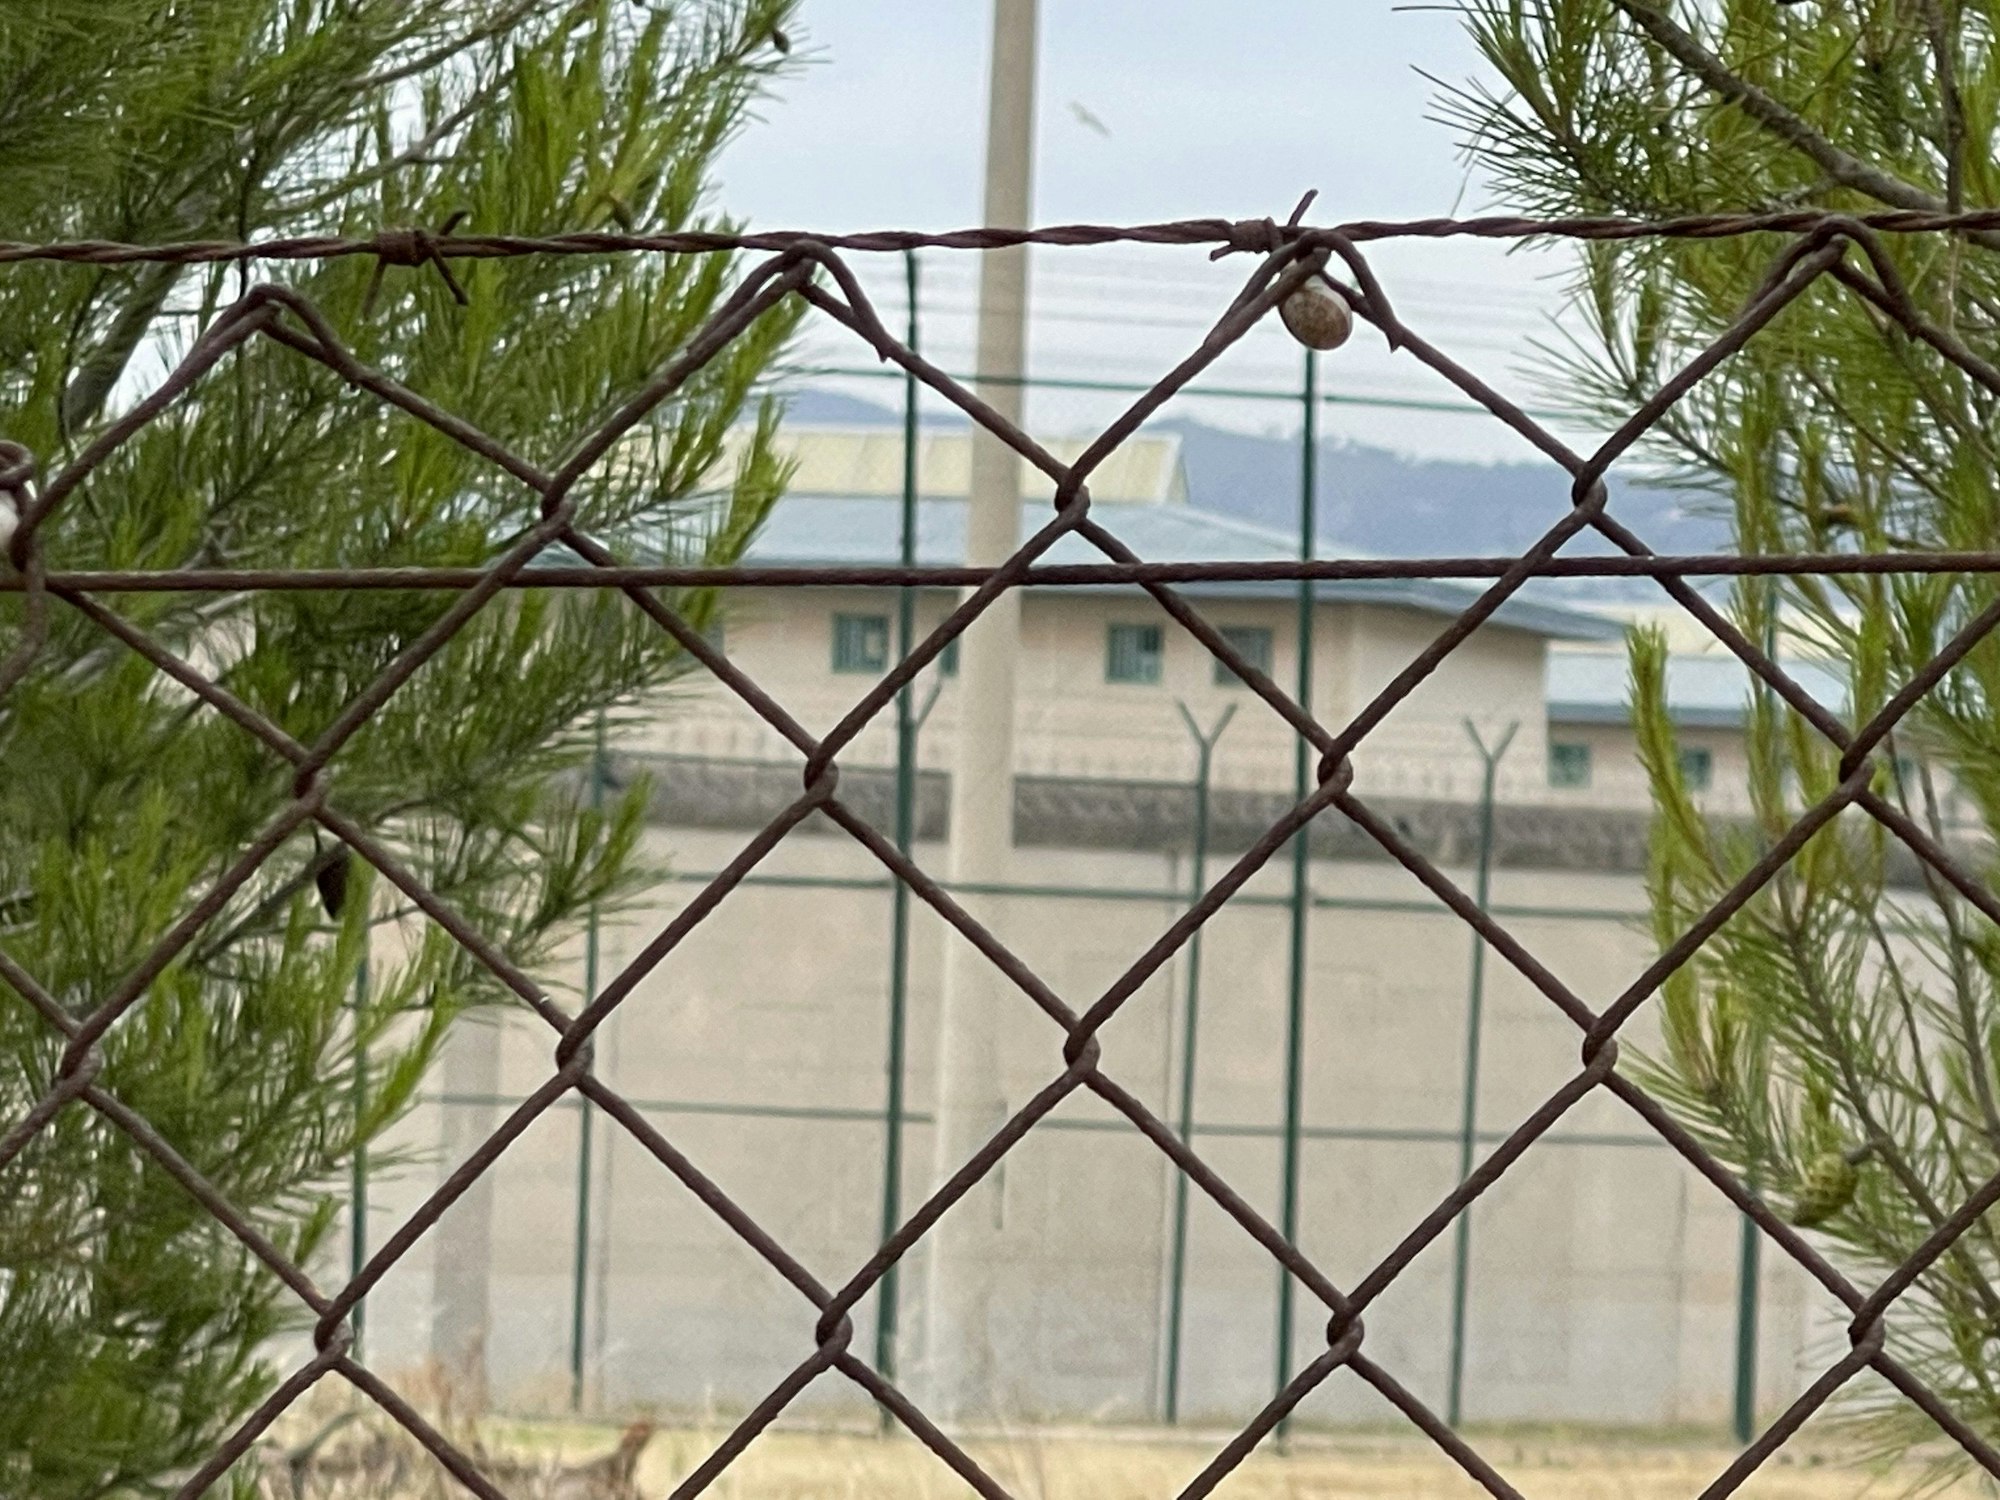 Das Gefängnis Centro Penitenciario de Mallorca.